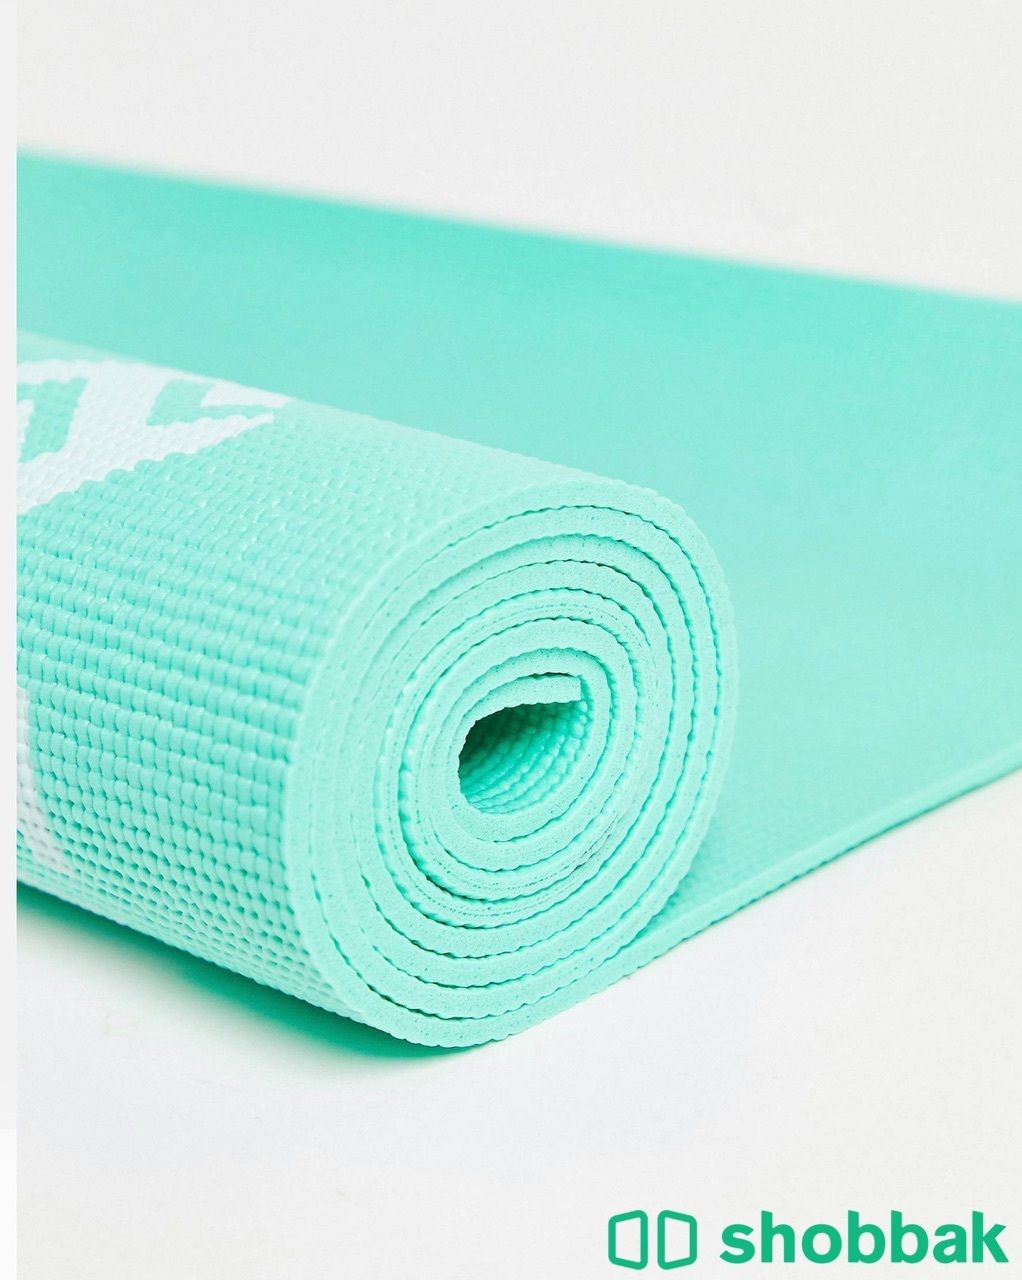 سجادة يوقا/يوغا مات Yoga Mat New Shobbak Saudi Arabia